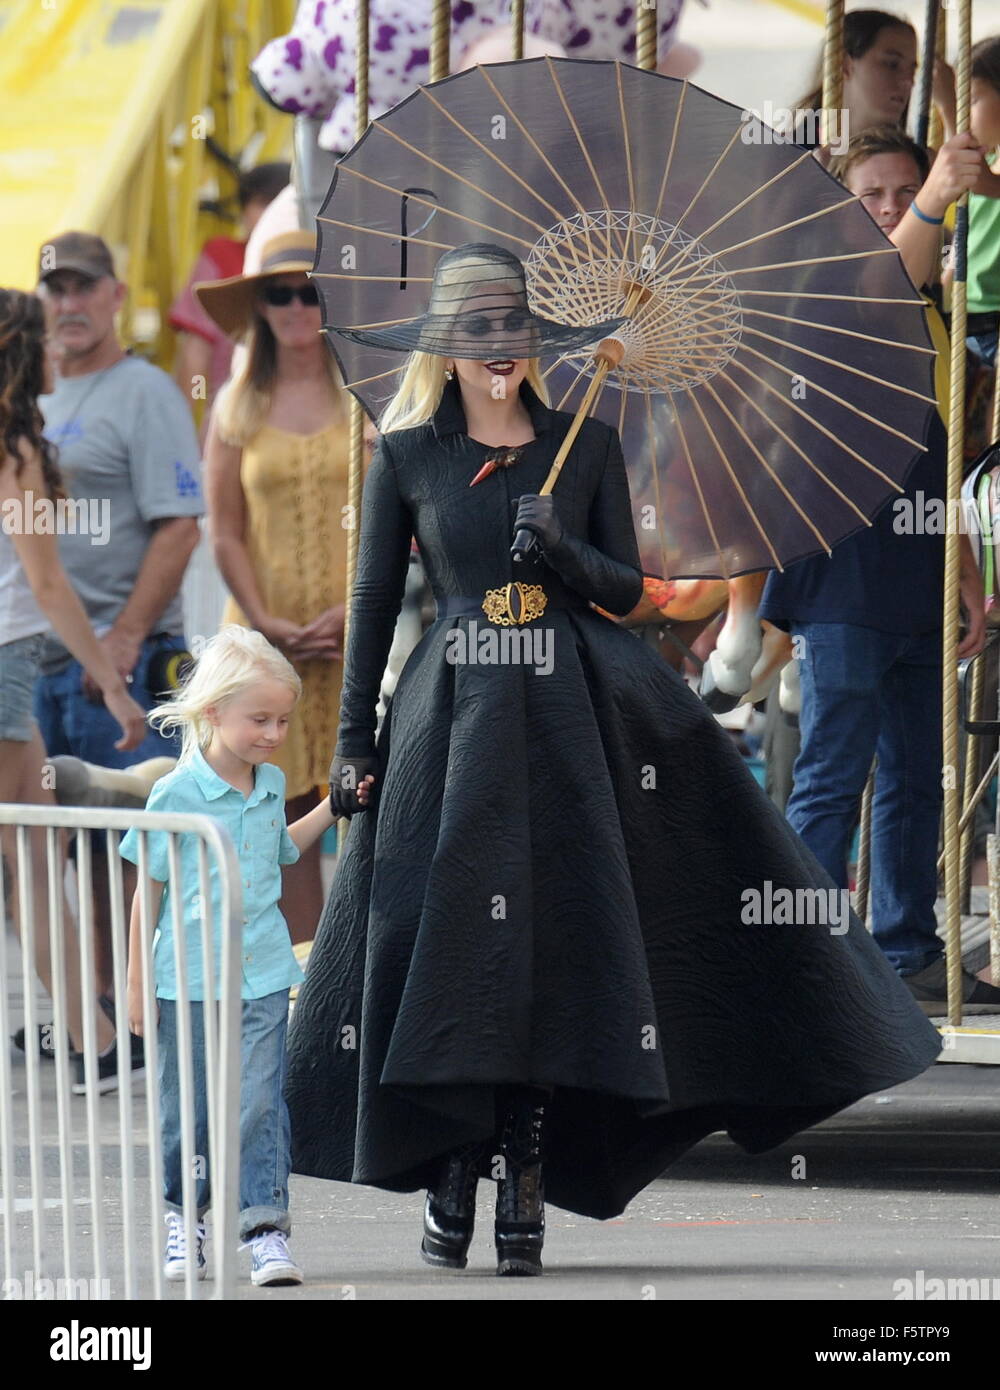 La condesa Lady Gaga vestido de negro para una escena de carnaval en la  playa en Santa Mónica para 'American Horror Story Hotel' con co star Wes  Bentley. El cantante camina alrededor